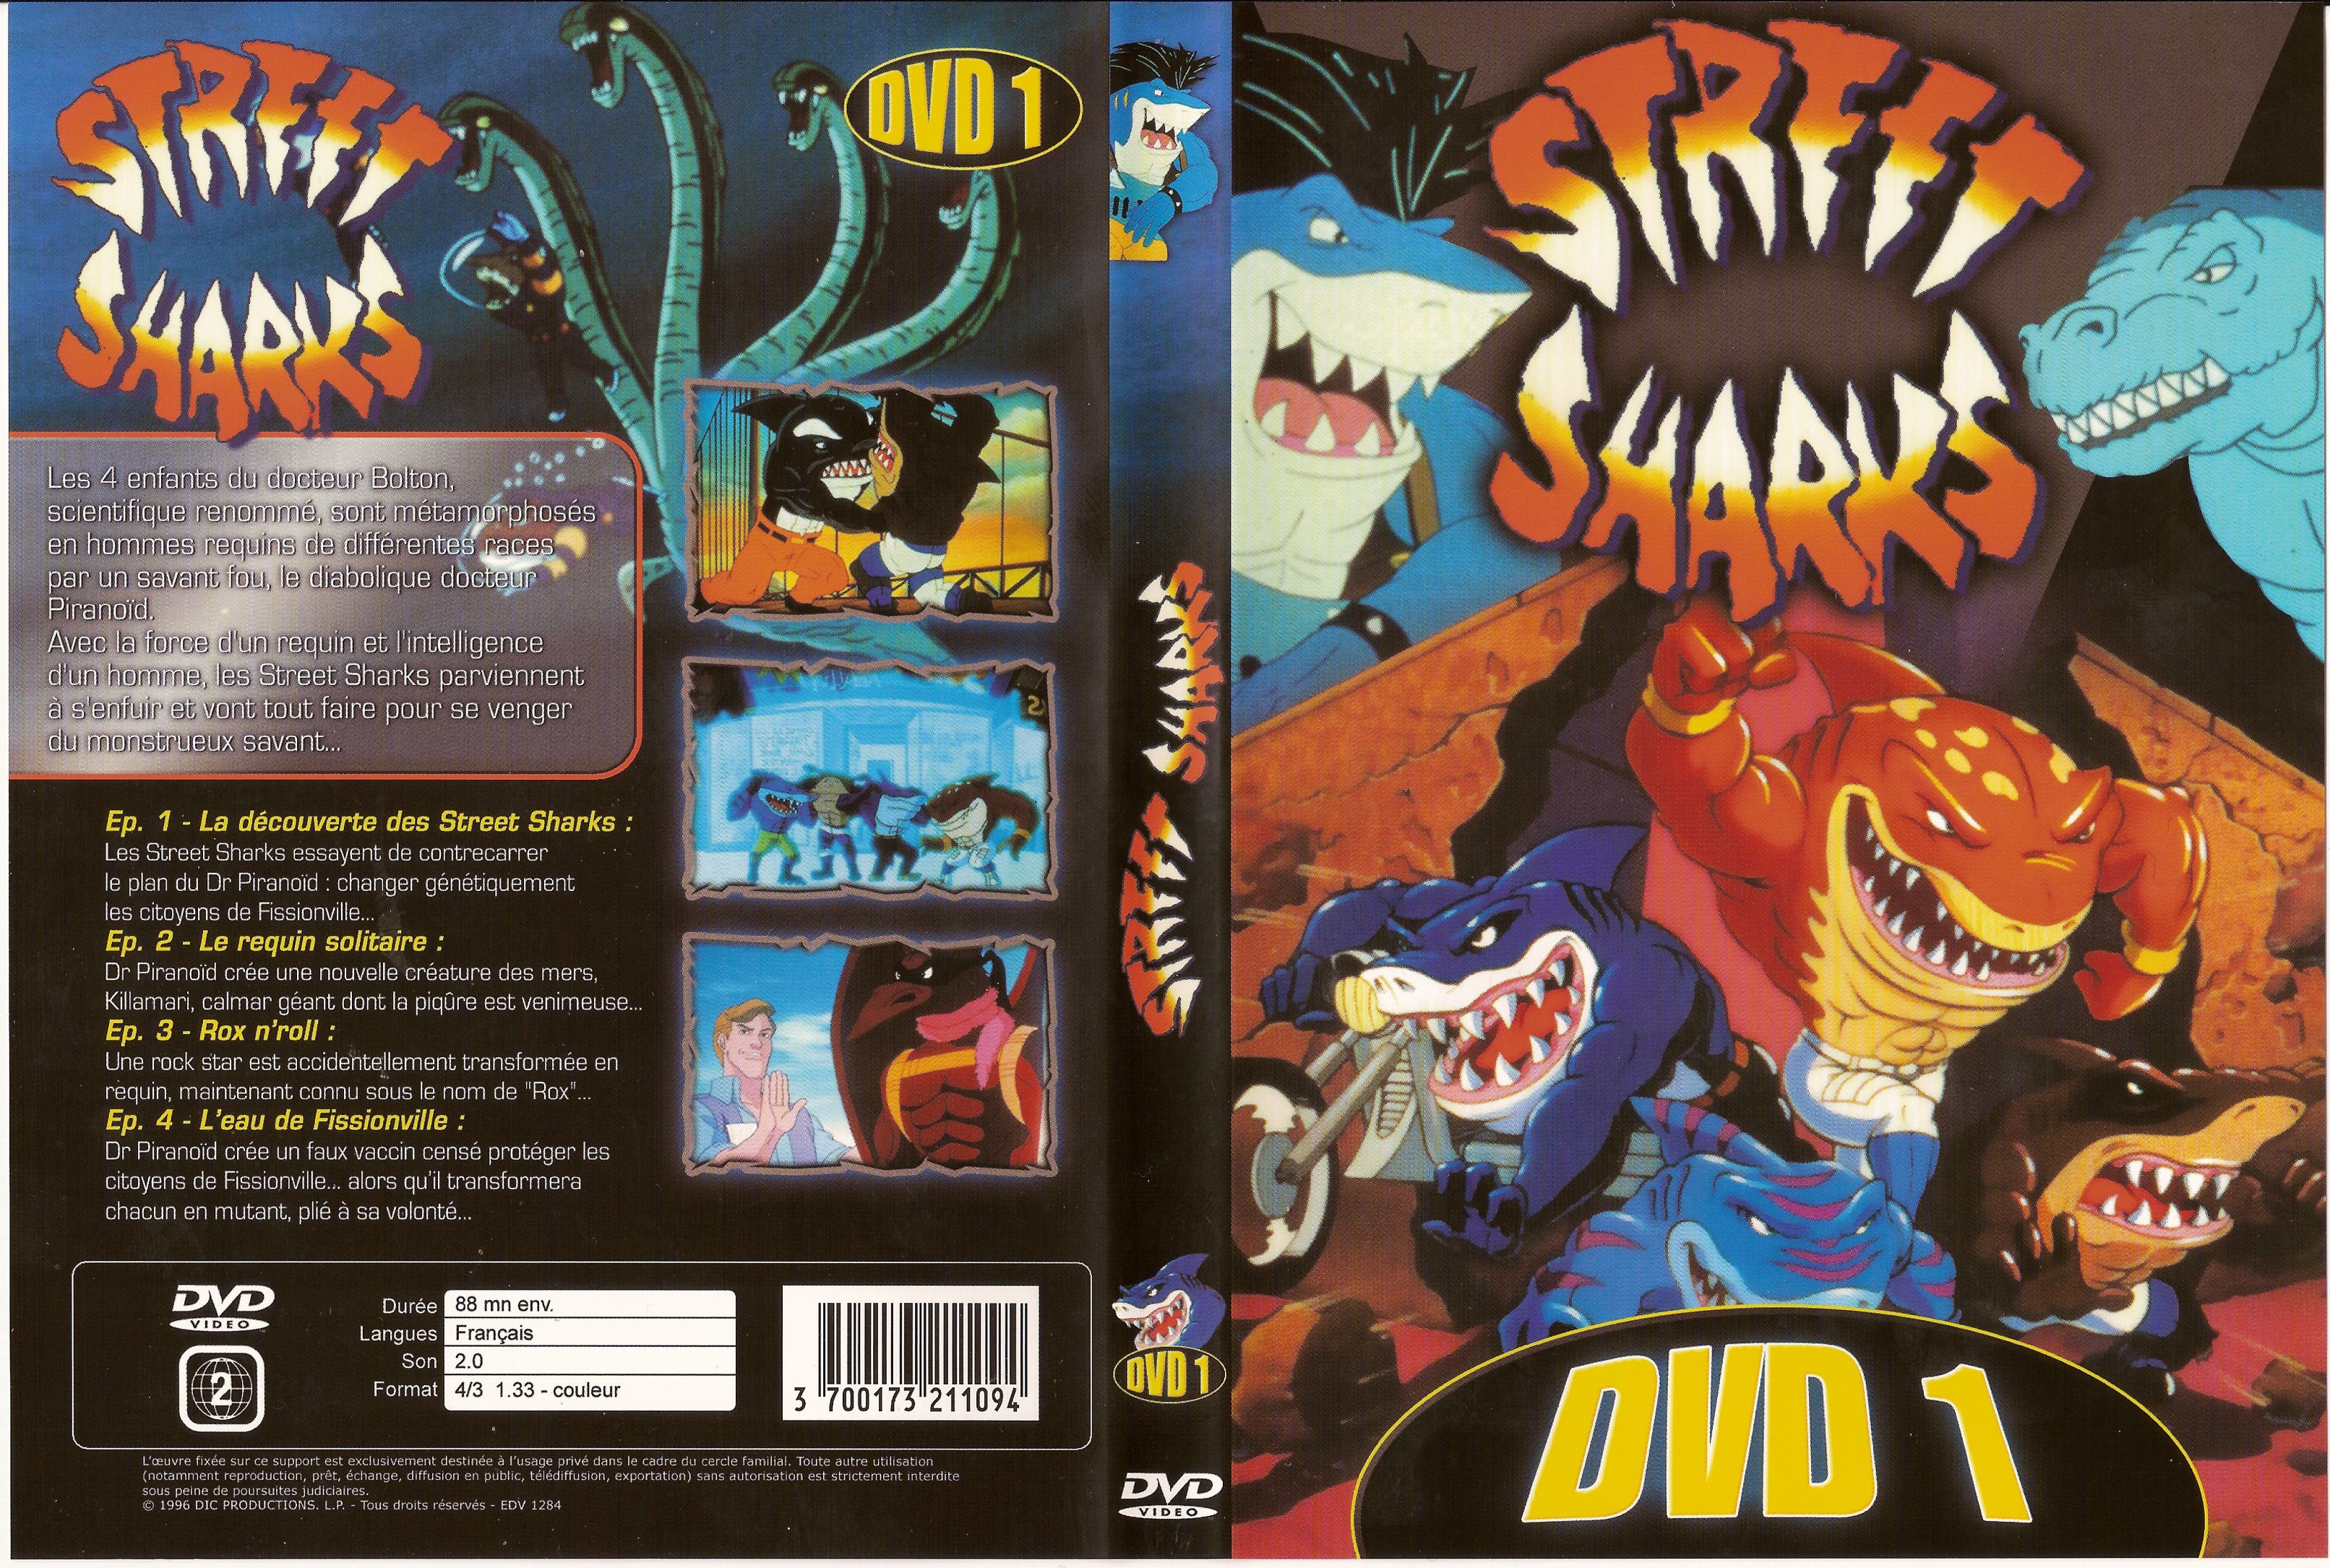 Jaquette DVD Steff sharks